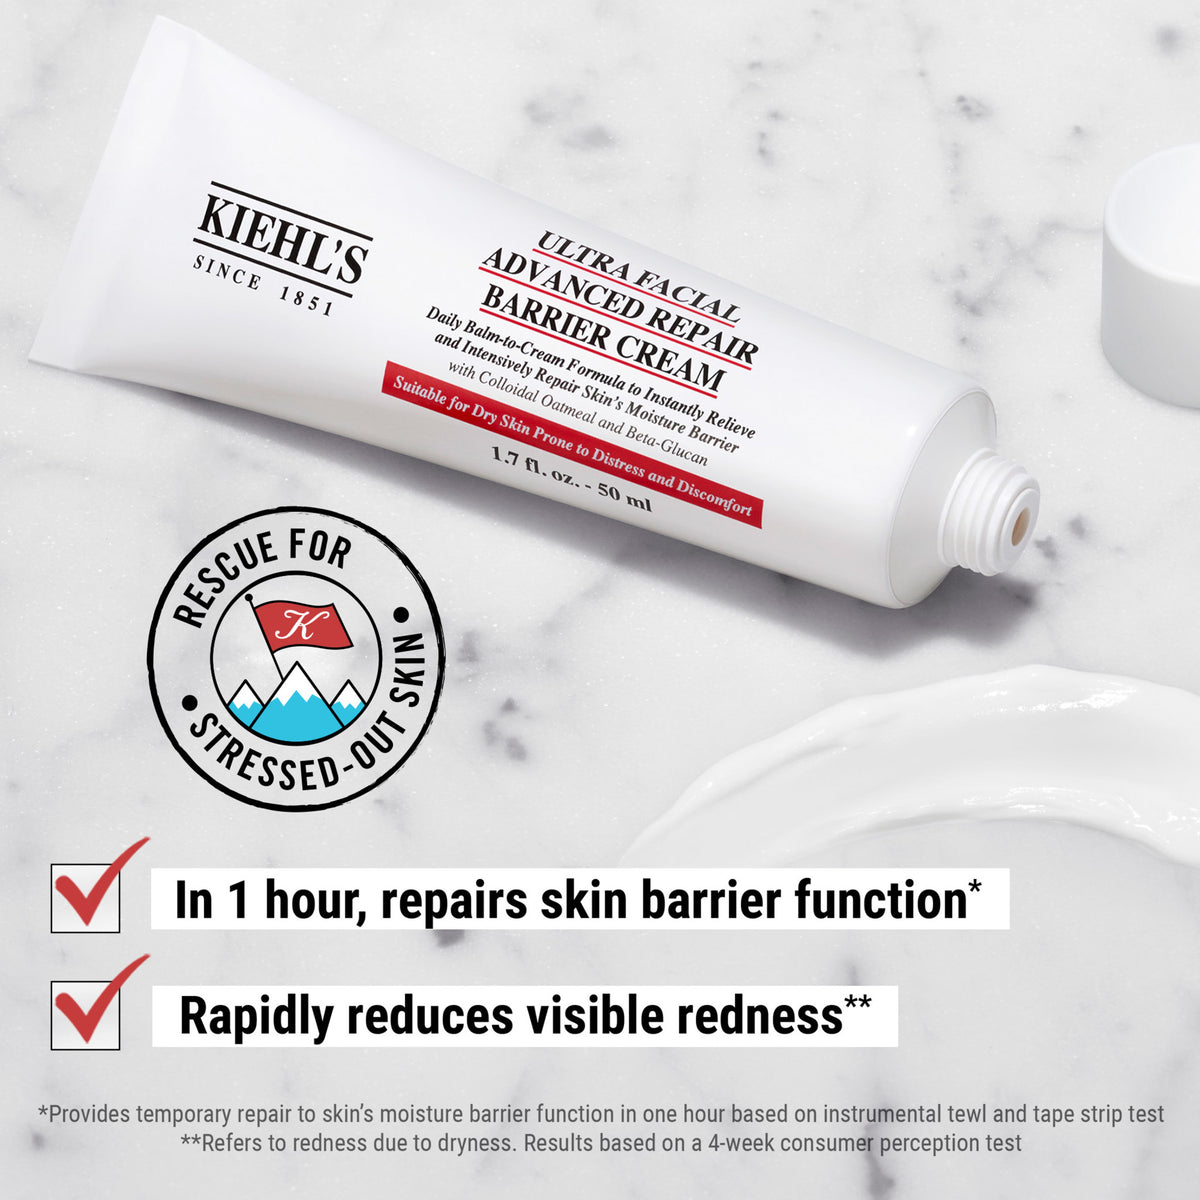 Kiehl's Since 1851 Ultra Facial Advanced Repair Barrier Cream .